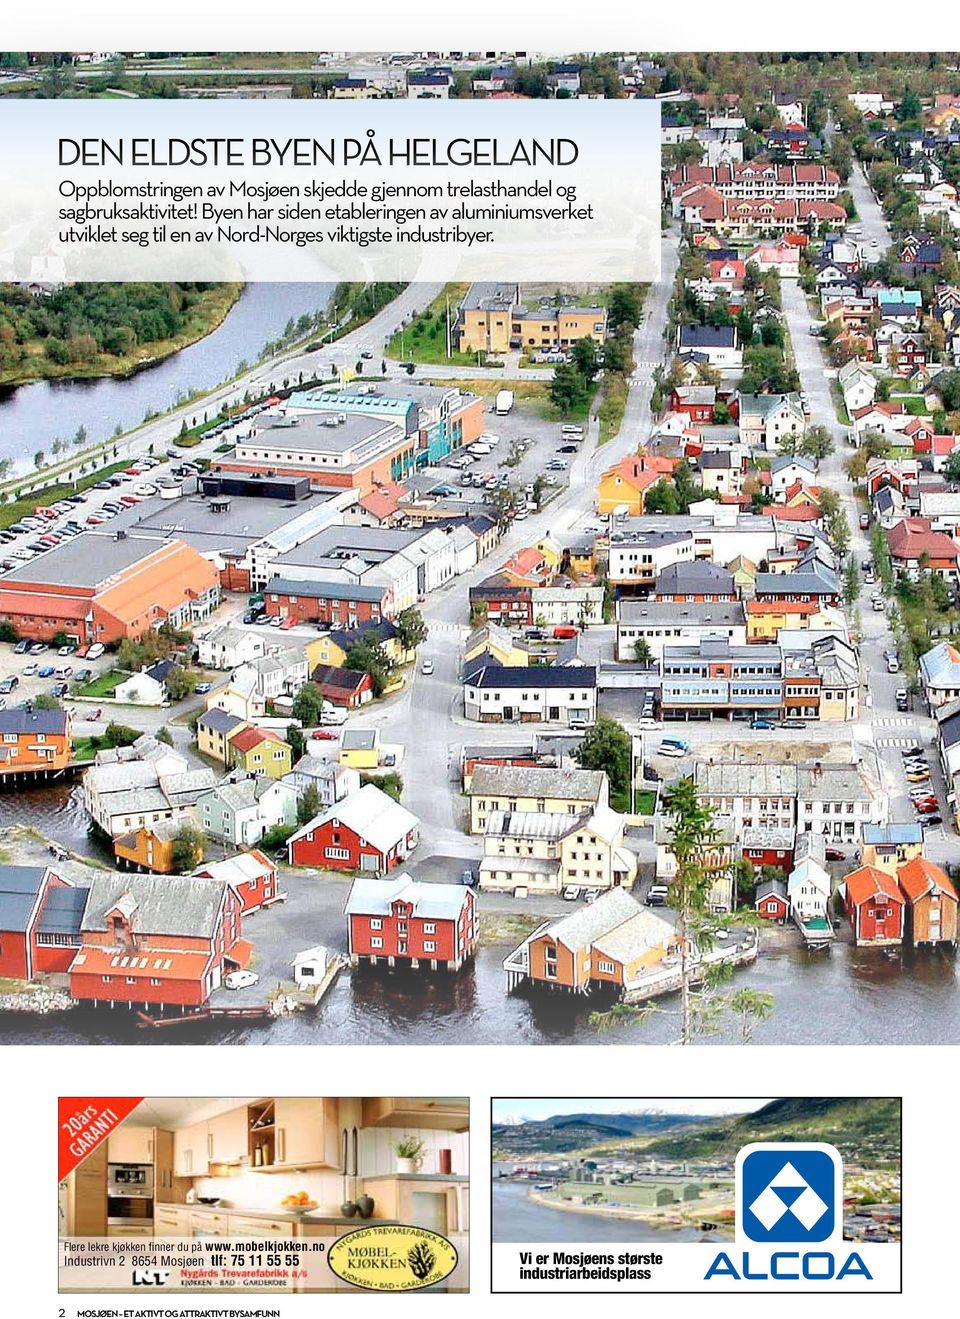 Byen har siden etableringen av aluminiumsverket utviklet seg til en av Nord-Norges viktigste